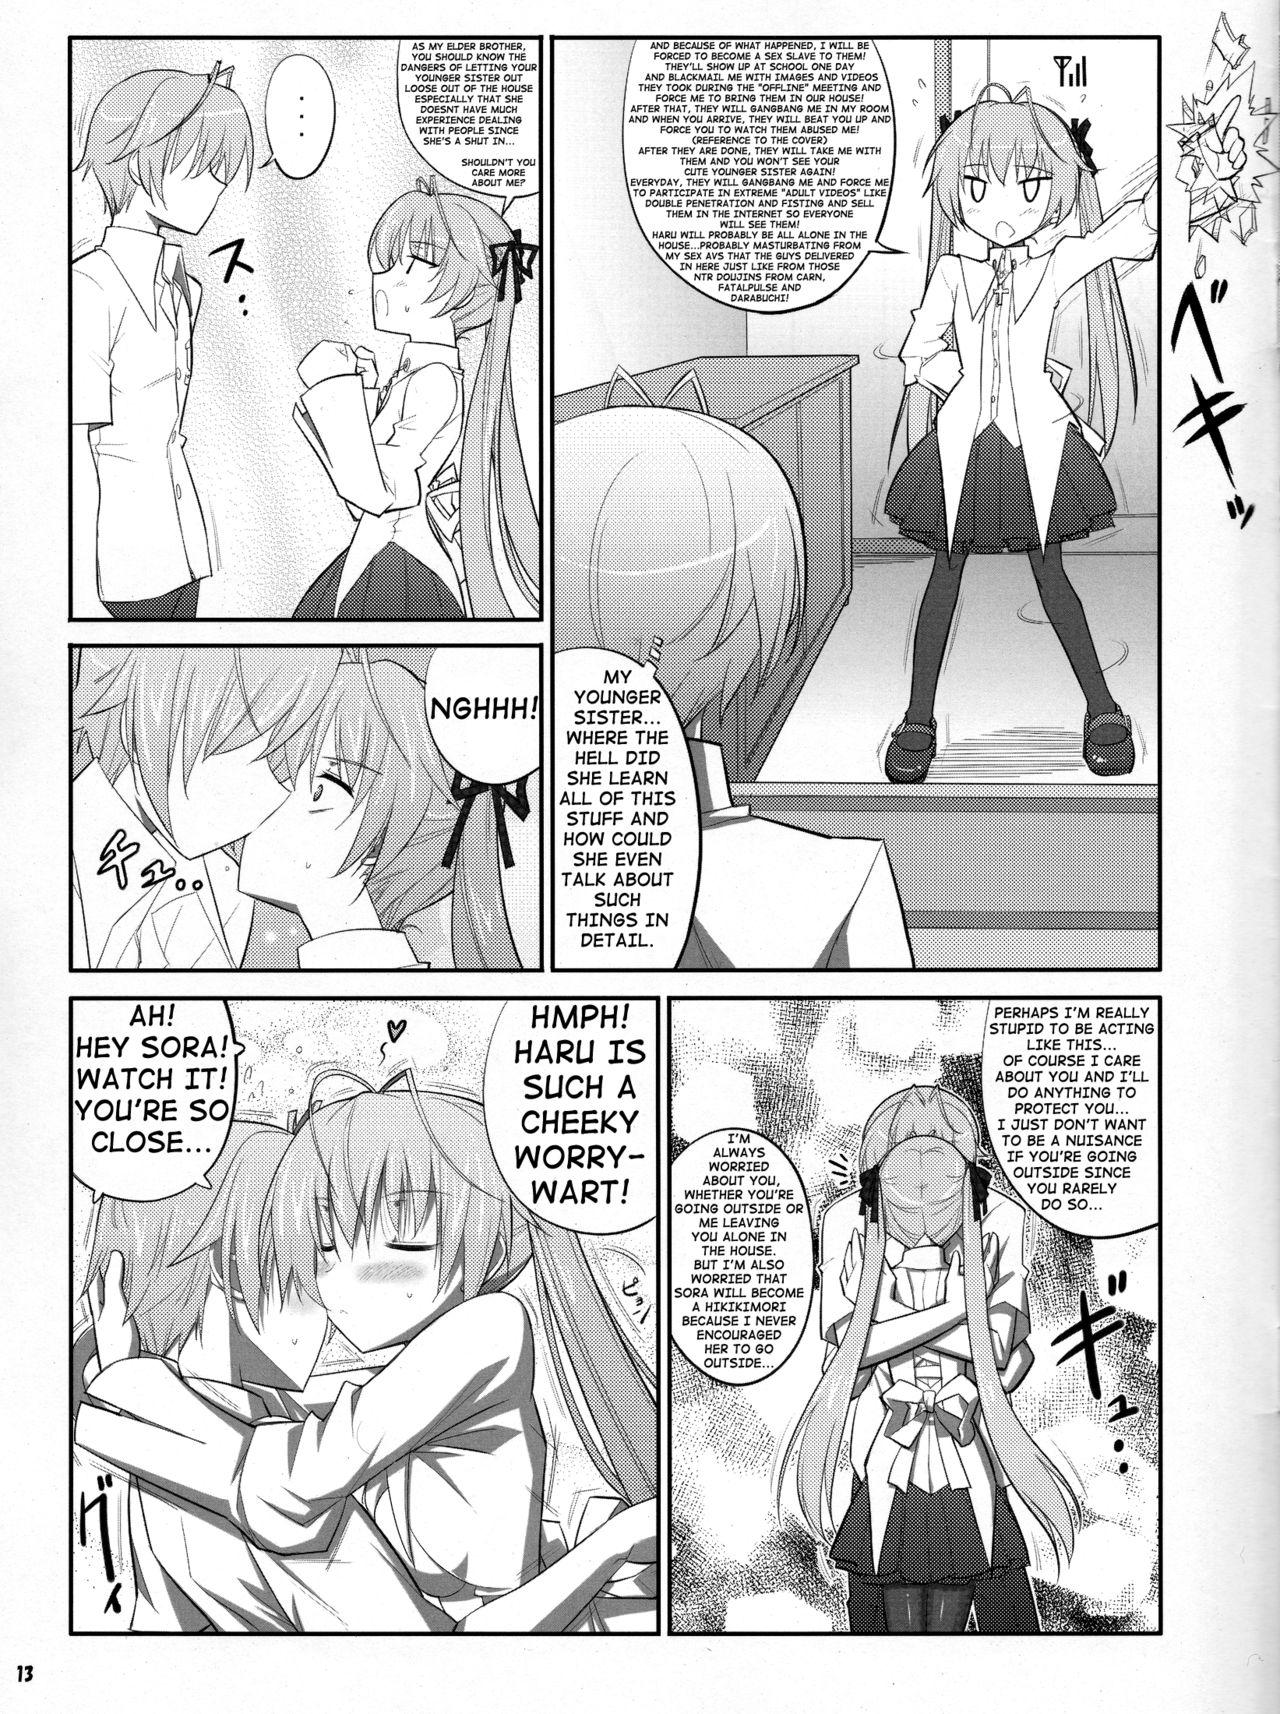 3some HN:SORA - Yosuga no sora Sesso - Page 13